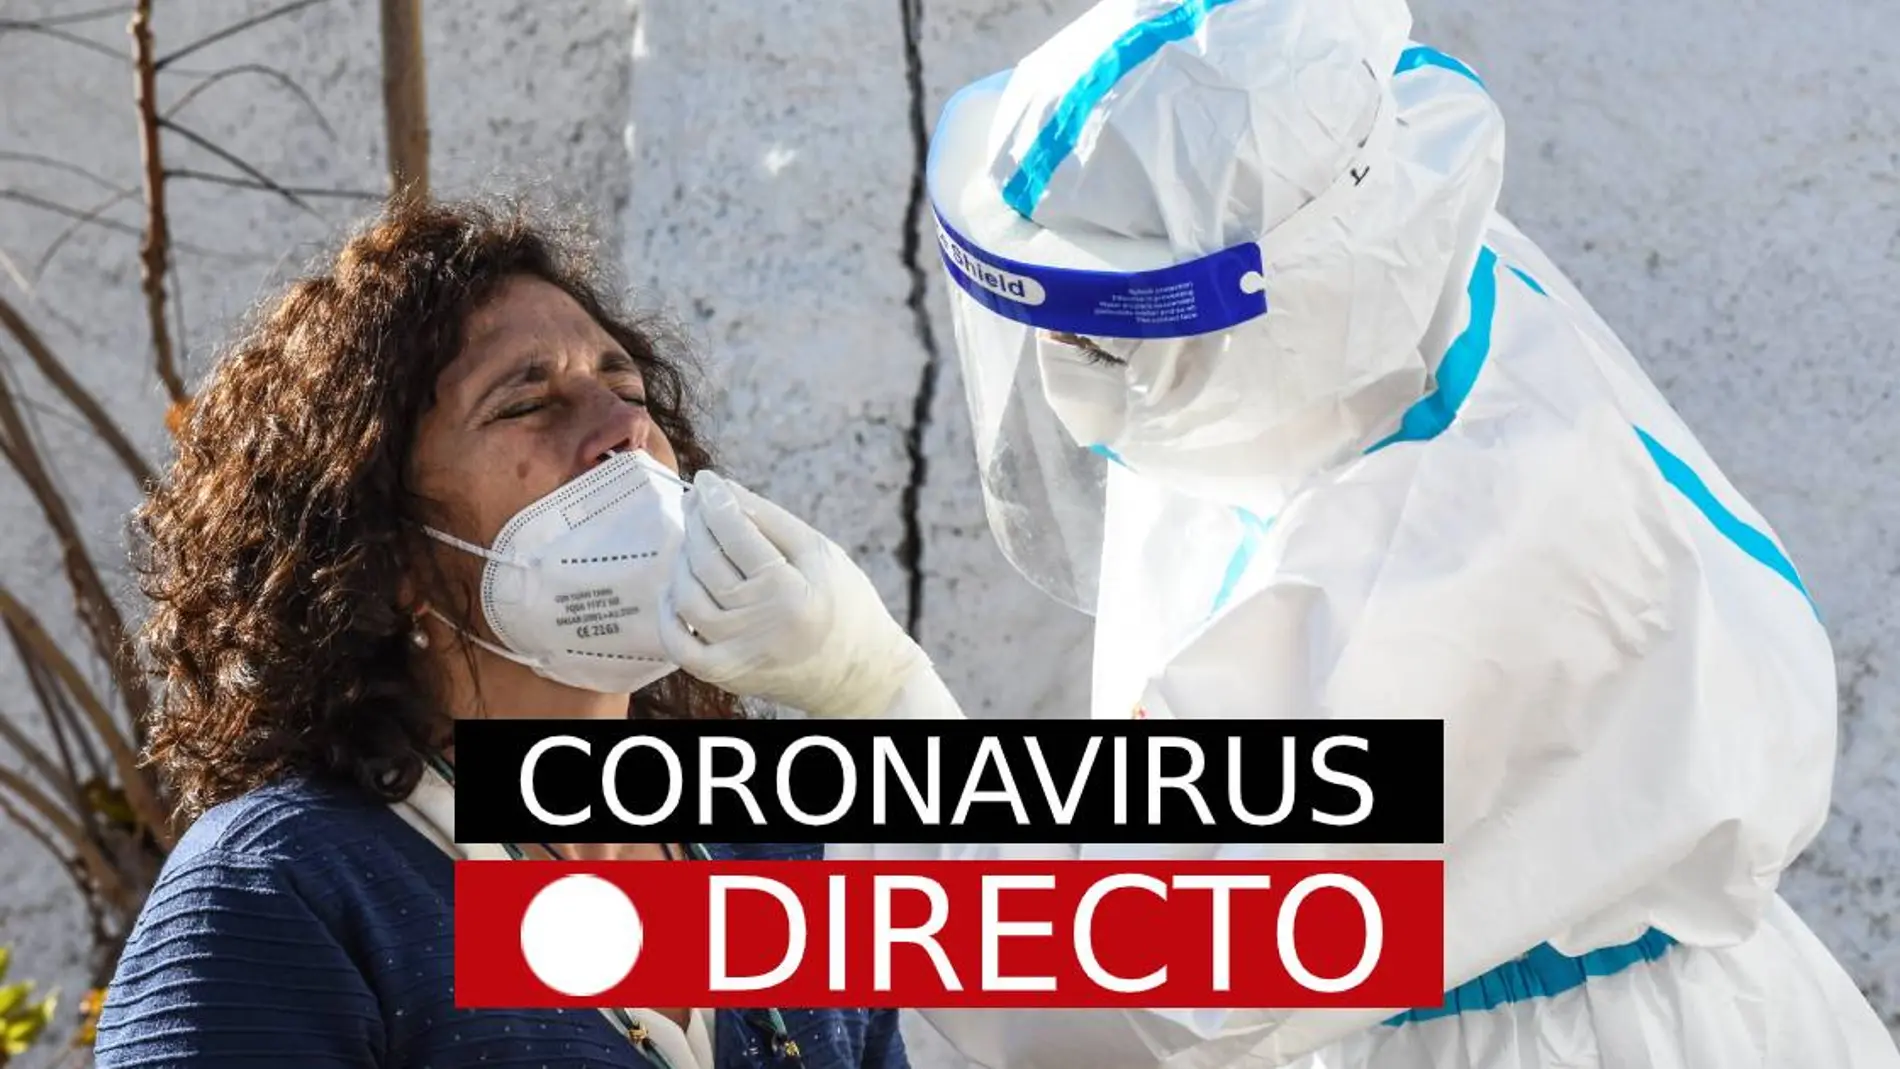 Coronavirus España | Plan de restricciones para Navidad y en el puente de Diciembre, noticias del COVID-19, en directo